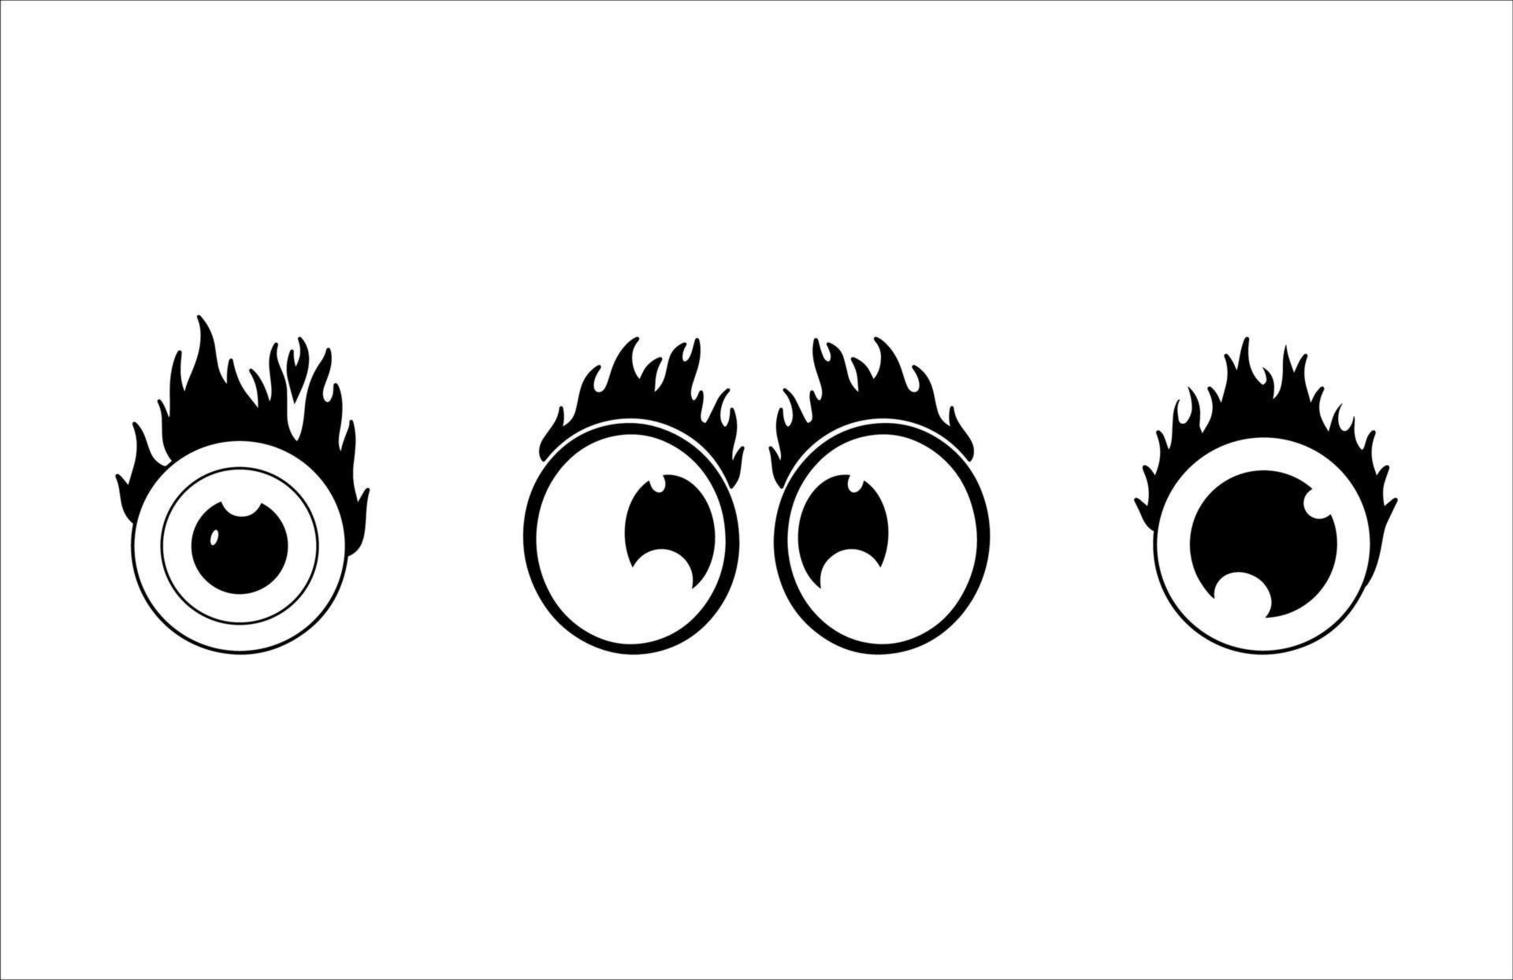 illustrazioni di occhi ardenti in bianco e nero vettore